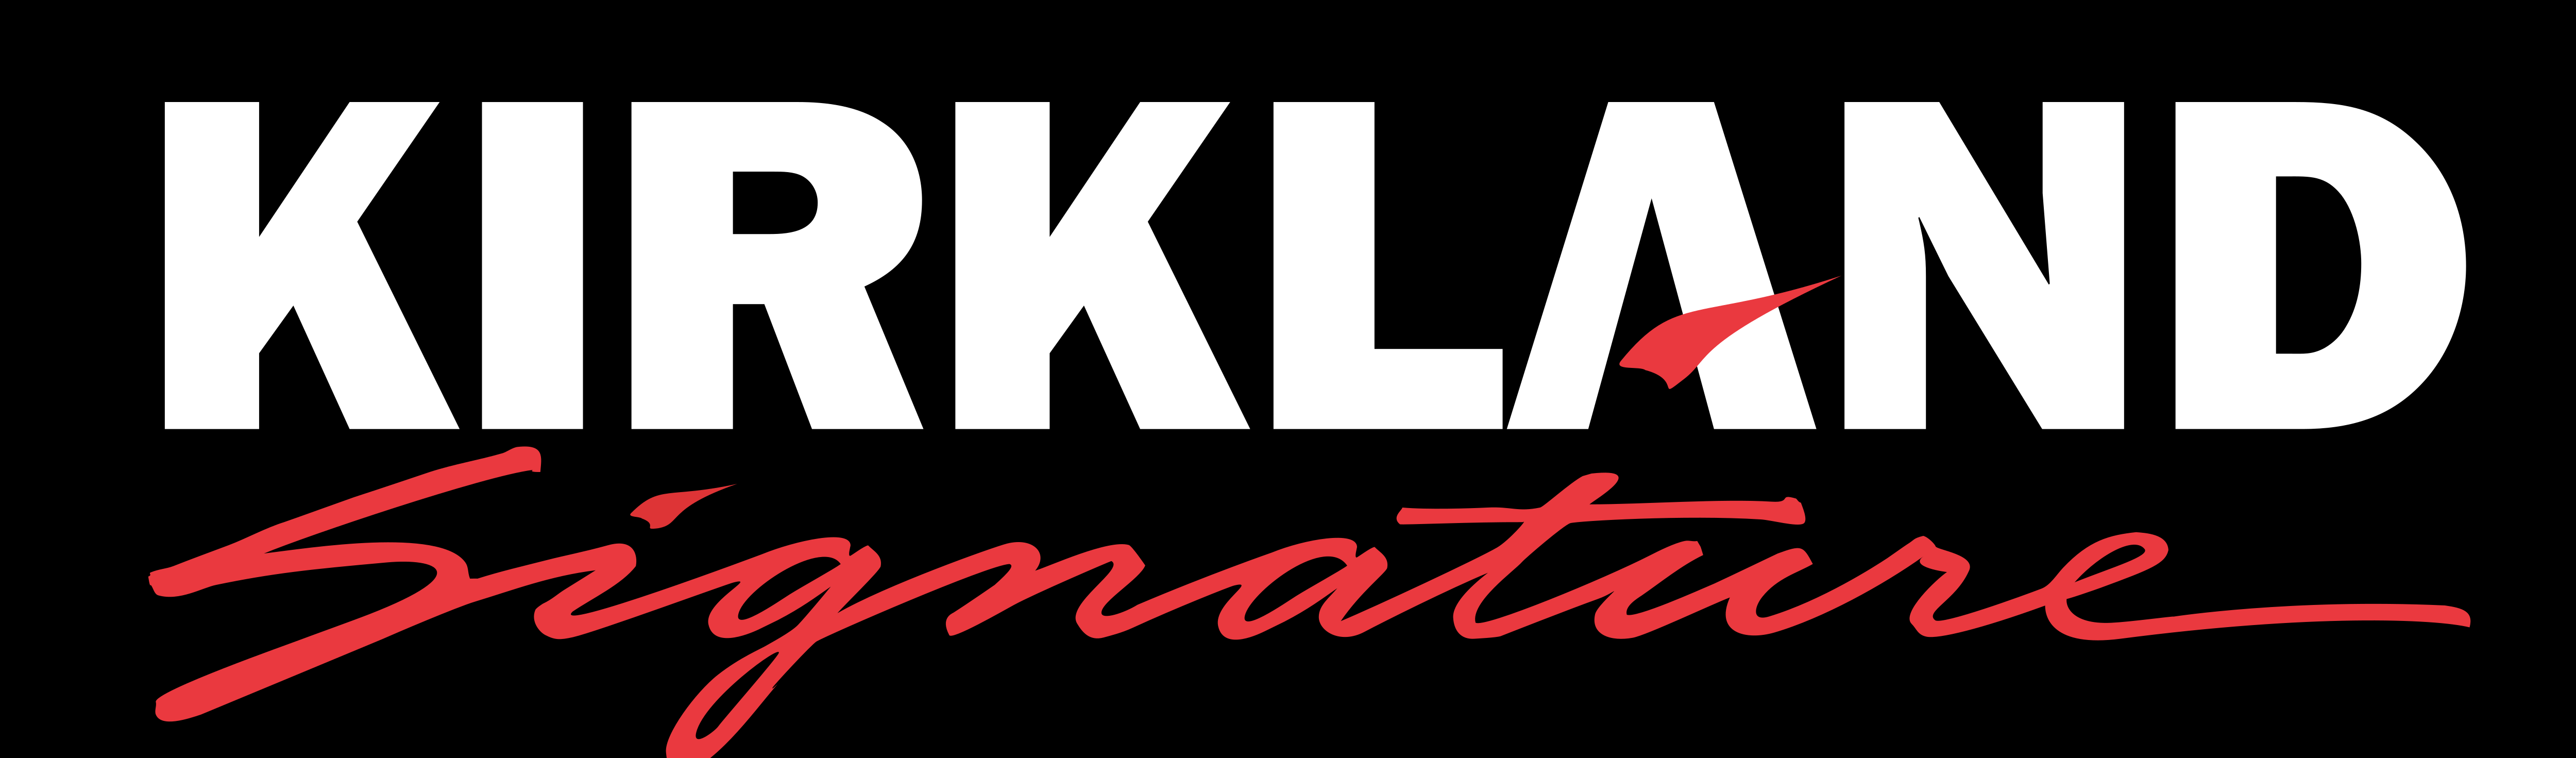 Kirkland Signature Logos Download